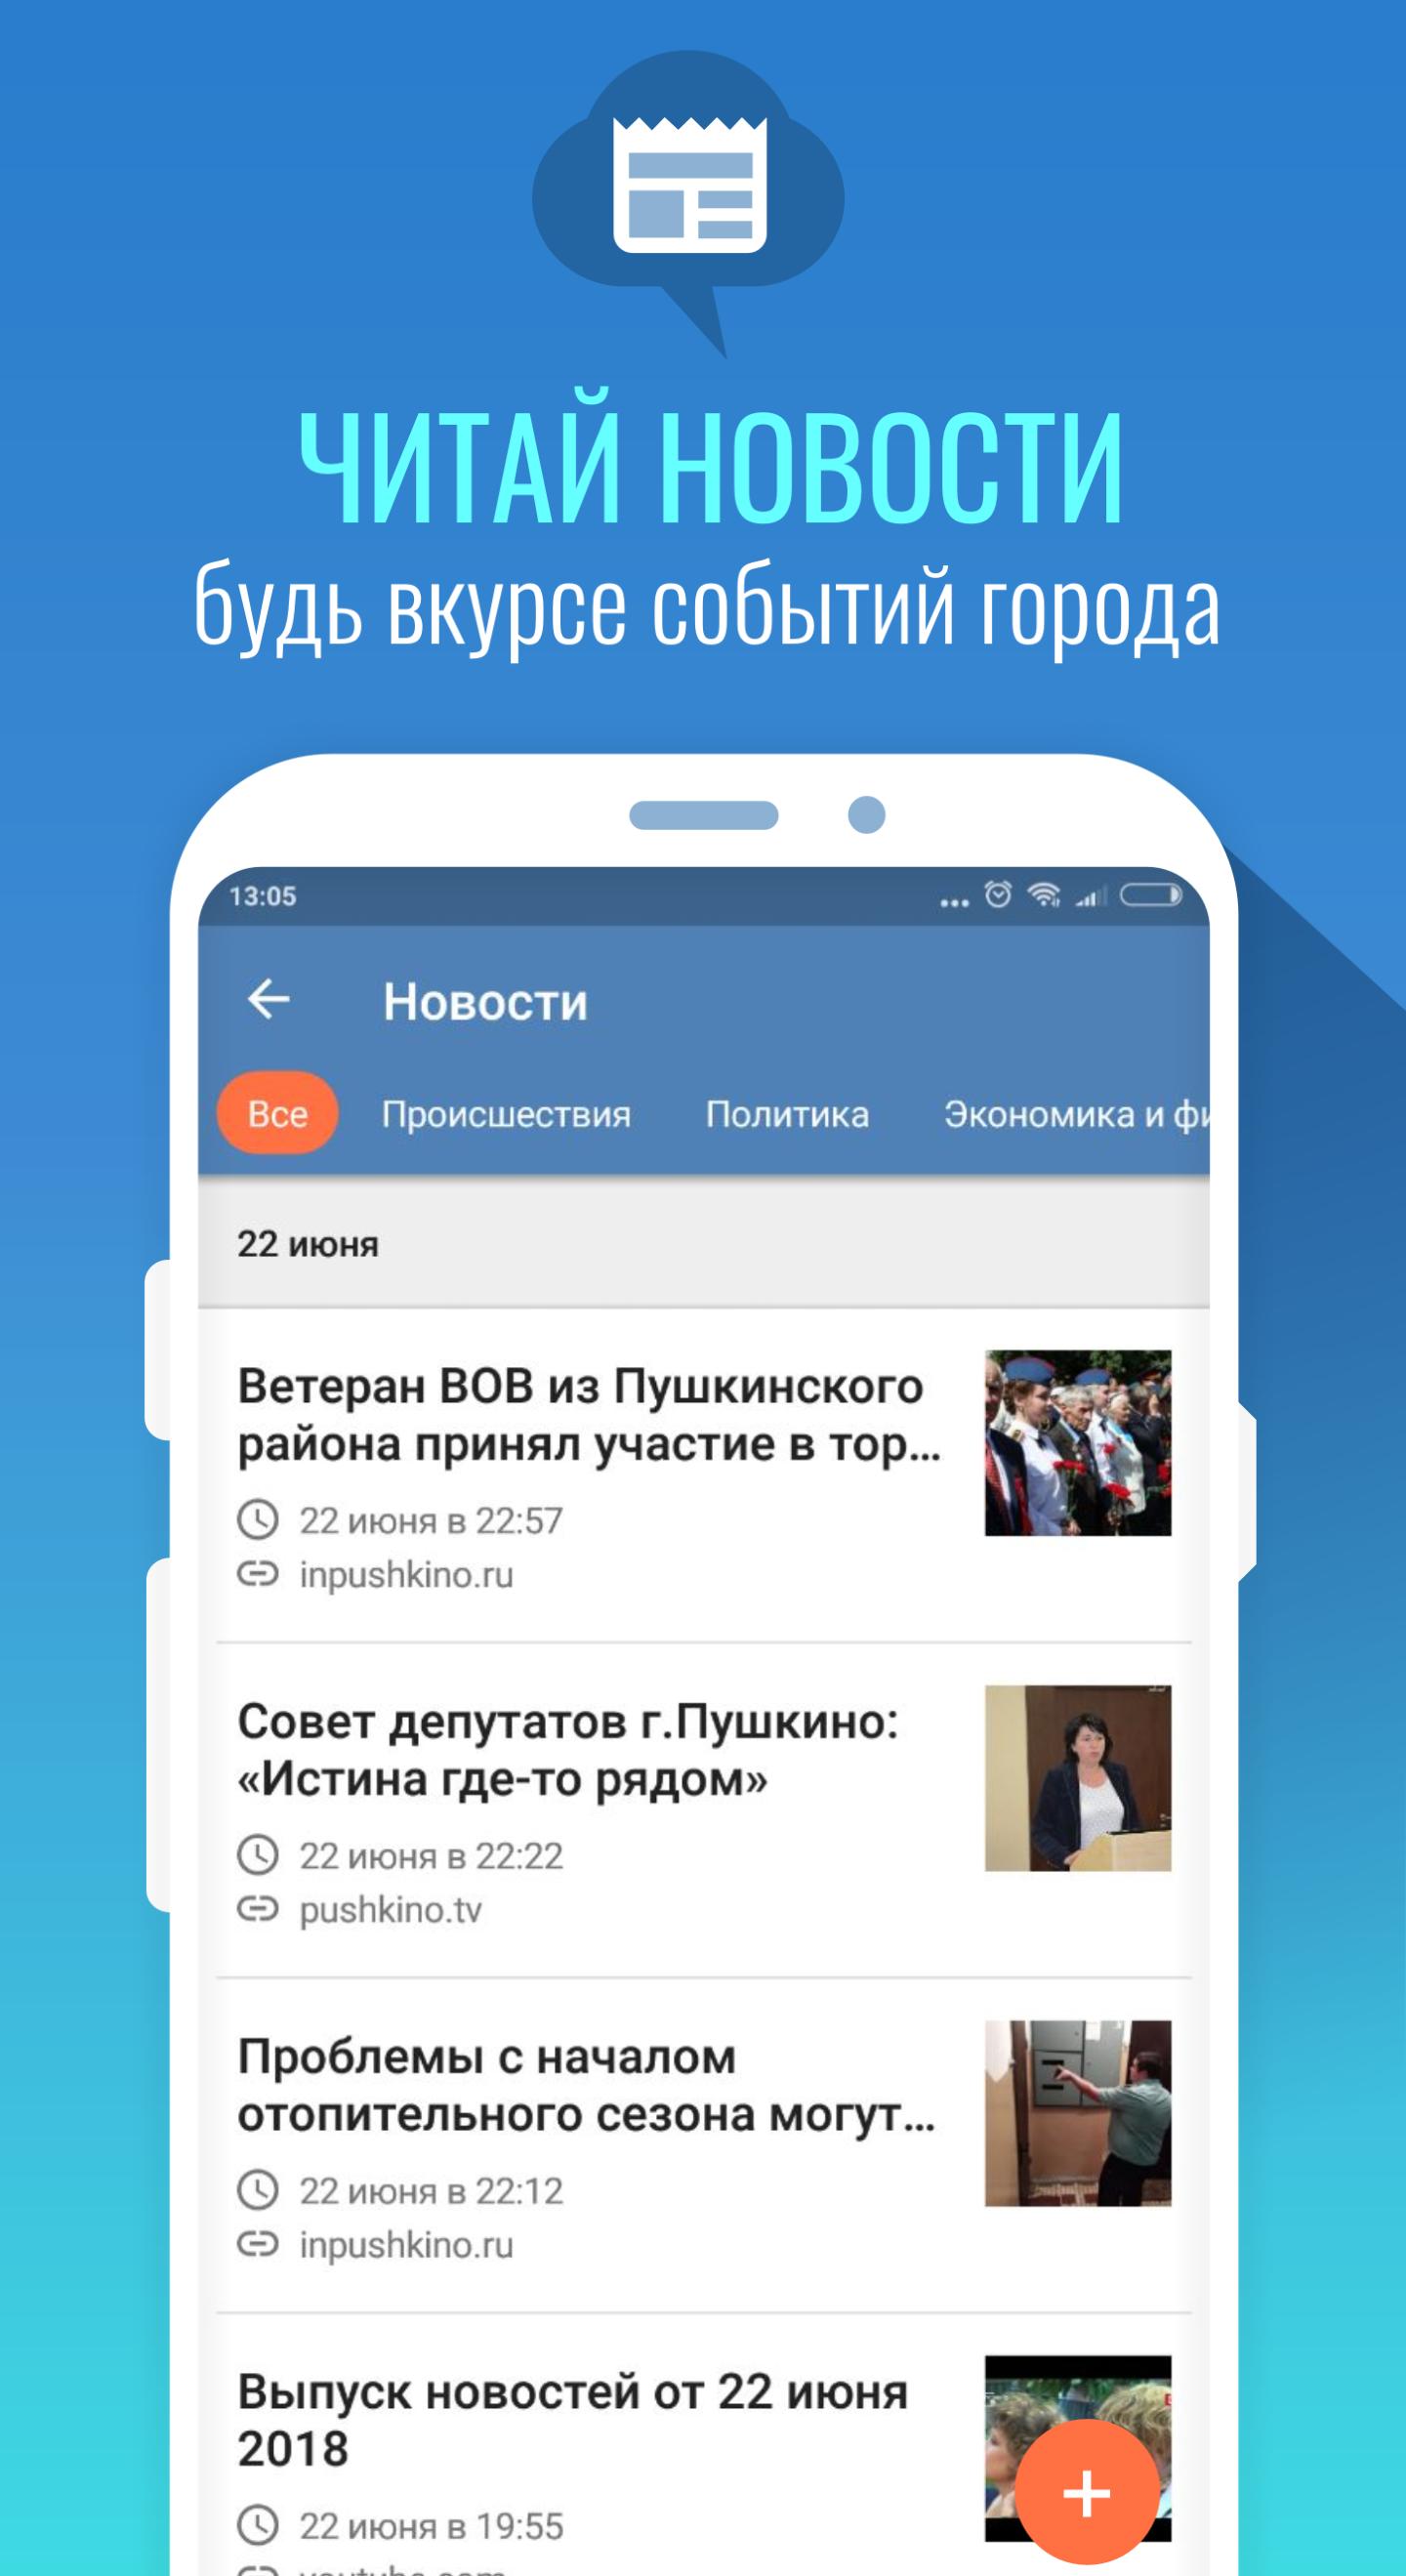 МойГород форумы, отзывы, события и новости города 2.4.13 Screenshot 4